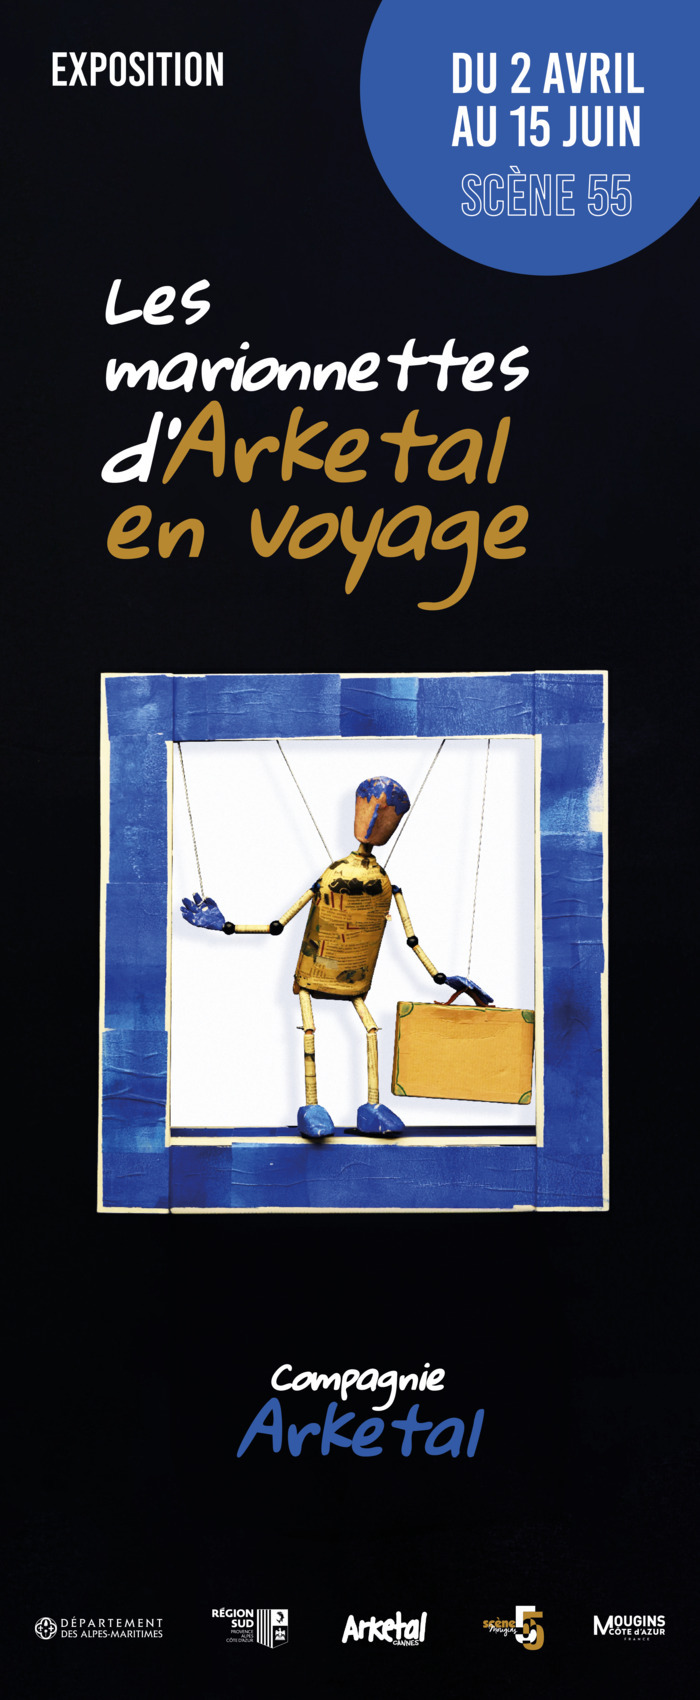 Exposition "Les marionnettes d'Arketal en voyage" Scène 55 Mougins